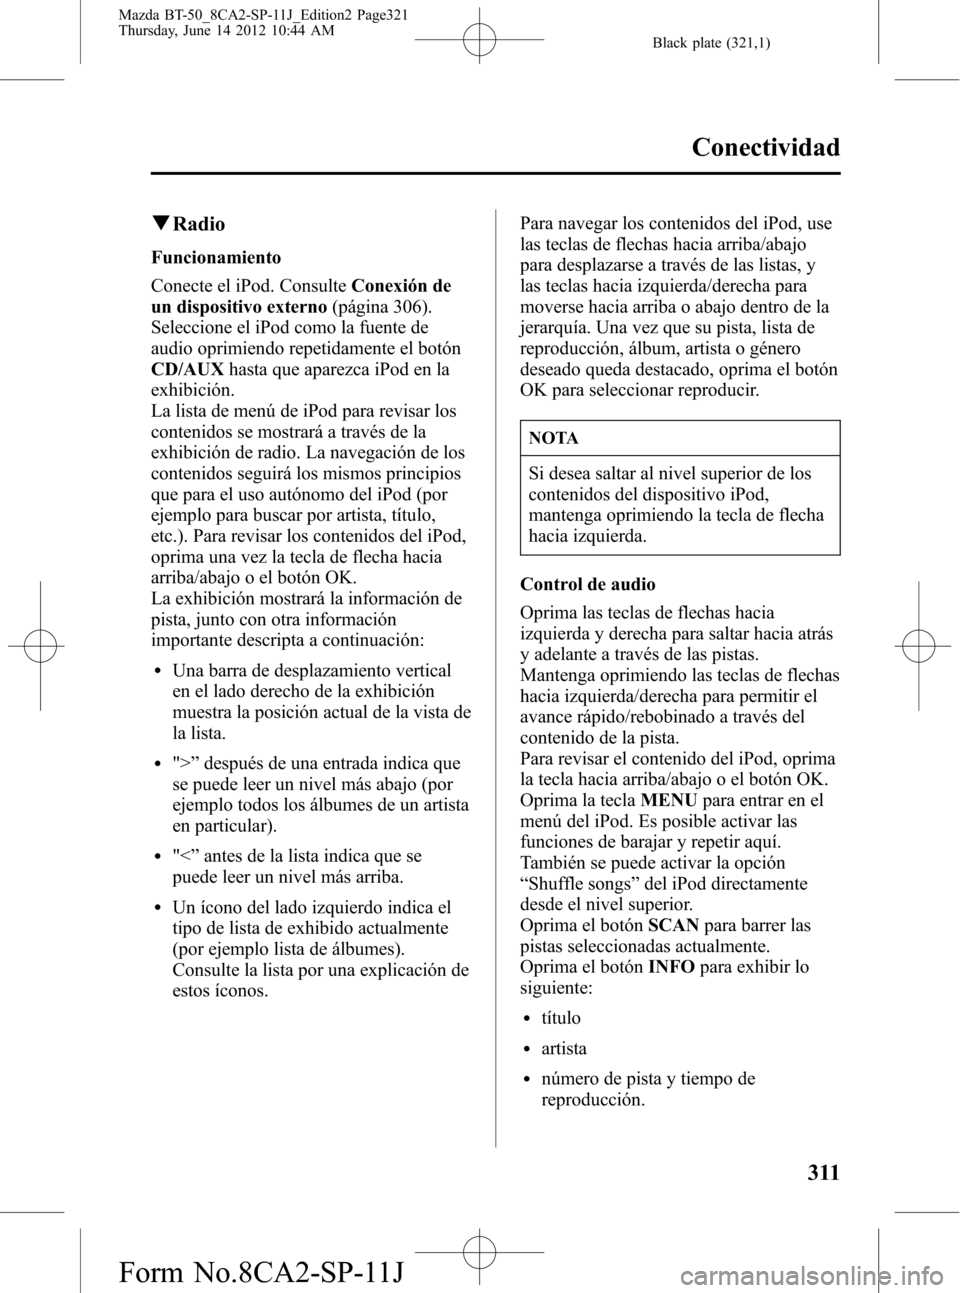 MAZDA MODEL BT-50 2014  Manual del propietario (in Spanish) Black plate (321,1)
qRadio
Funcionamiento
Conecte el iPod. ConsulteConexión de
un dispositivo externo(página 306).
Seleccione el iPod como la fuente de
audio oprimiendo repetidamente el botón
CD/AU